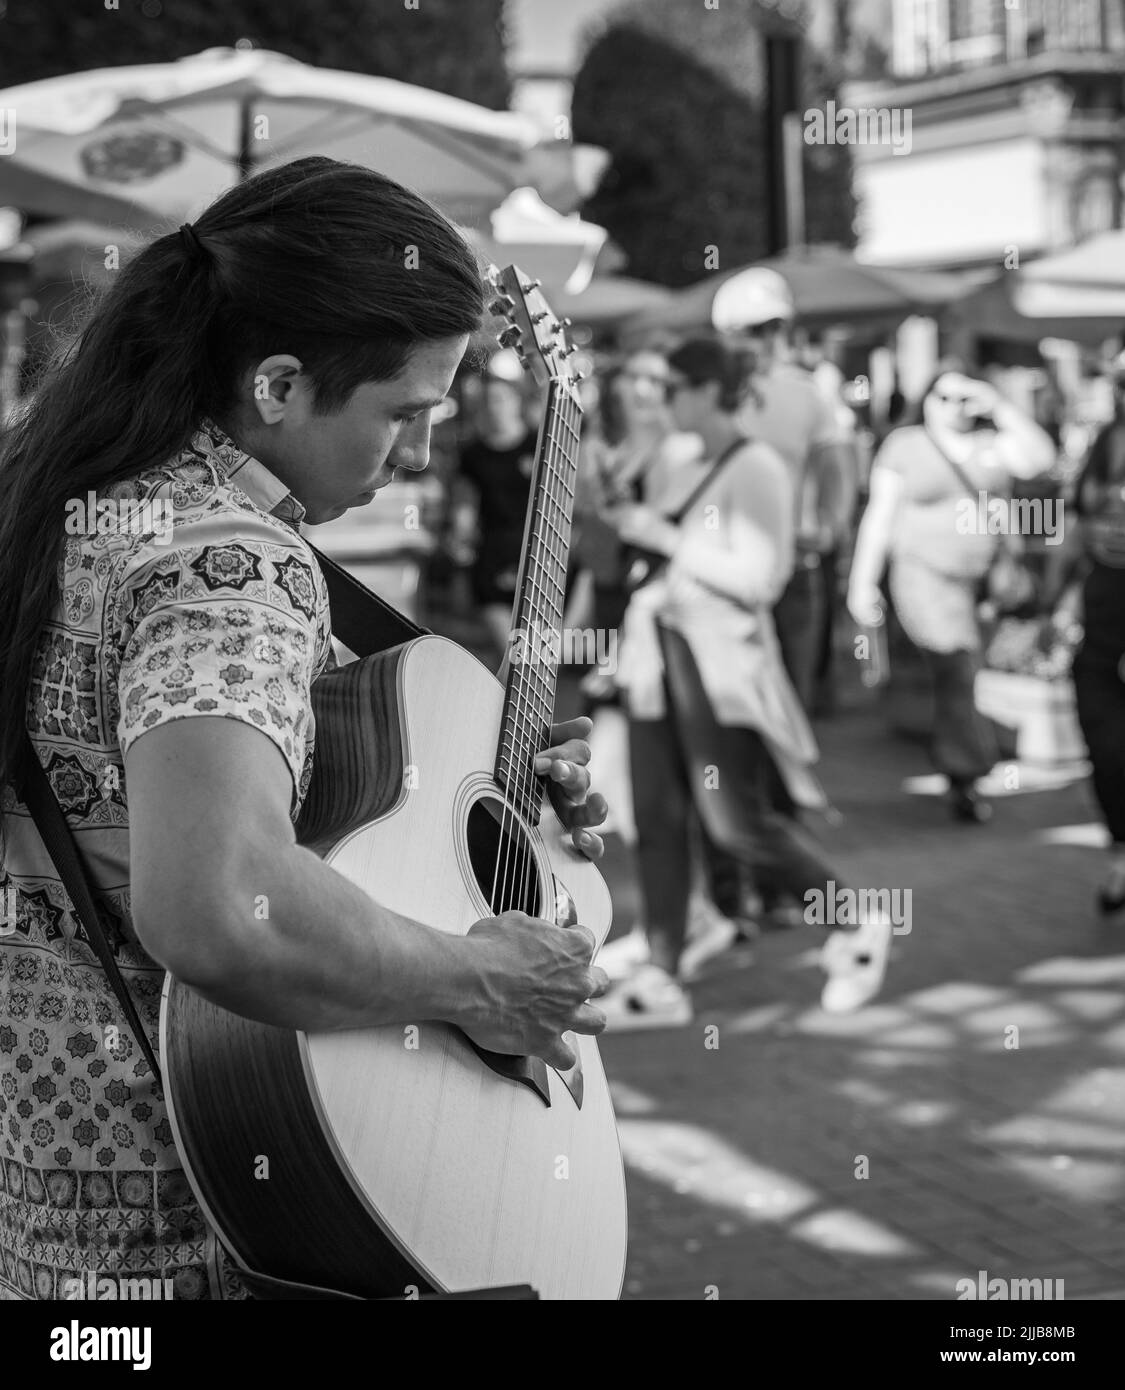 Un uomo romantico sta suonando la chitarra sulla strada della città. Un musicista di strada suona all'aperto. Amore, romanticismo, amanti, serenata, romanticismo, Foto di viaggio-luglio Foto Stock